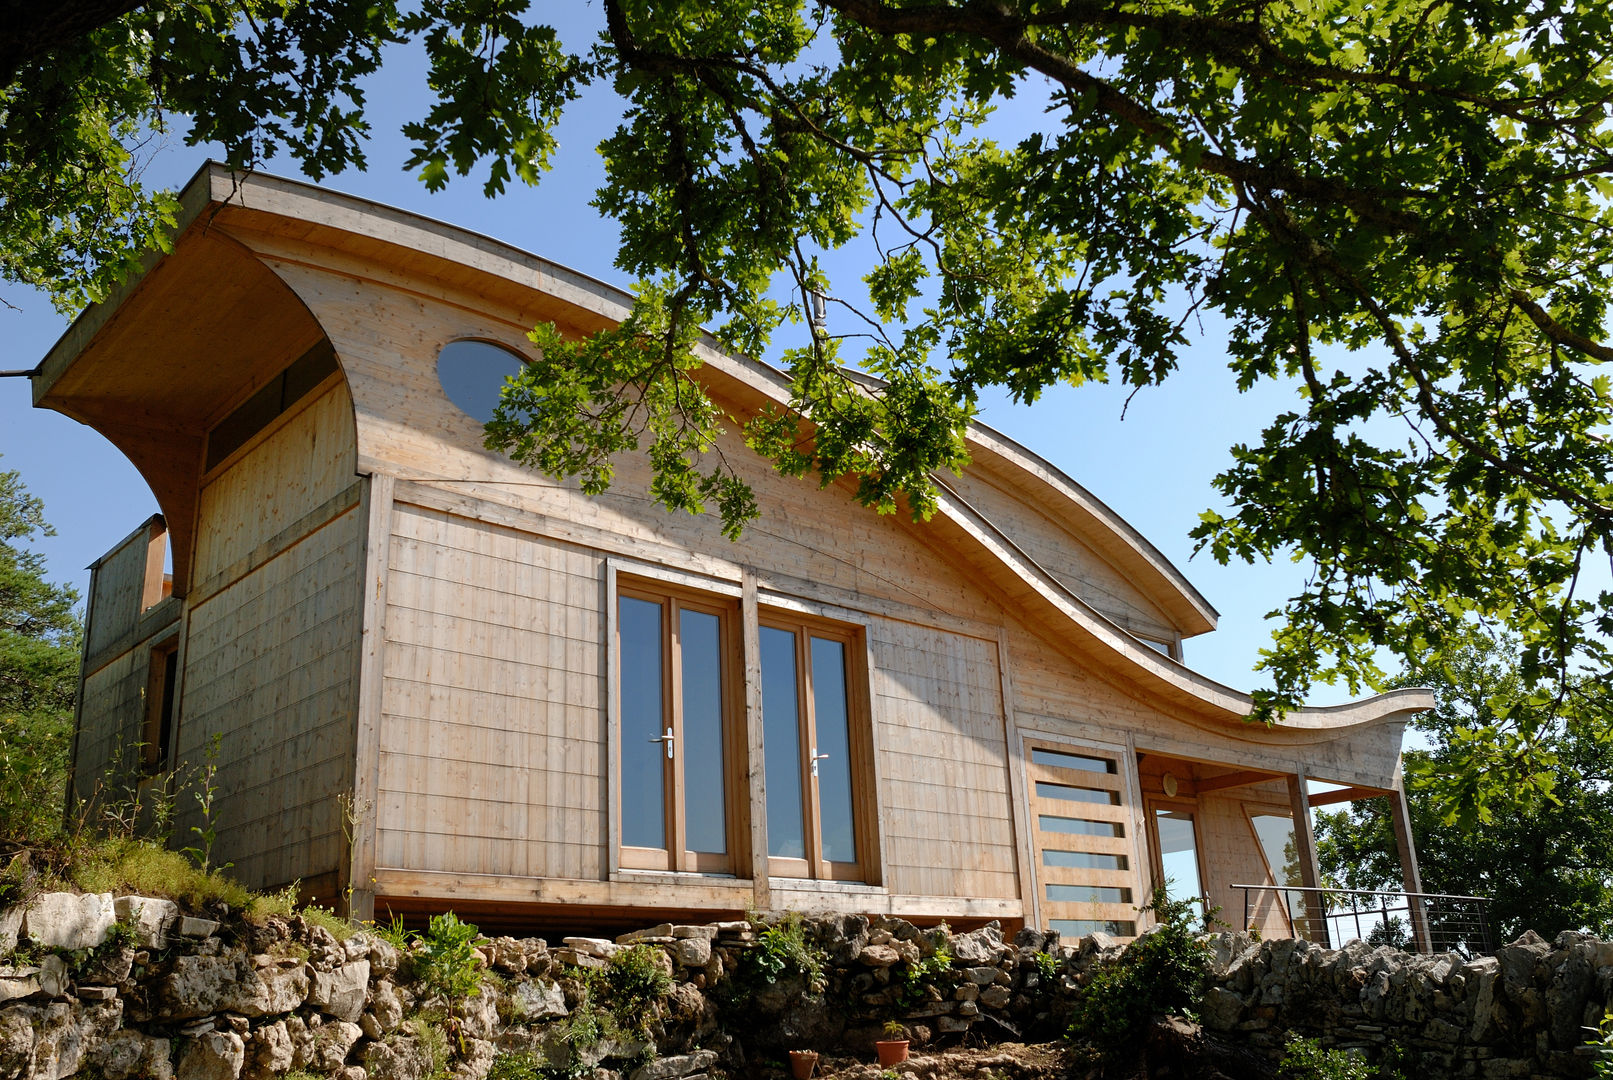 Maison écologique de José Bové, eco-designer eco-designer Moderne huizen